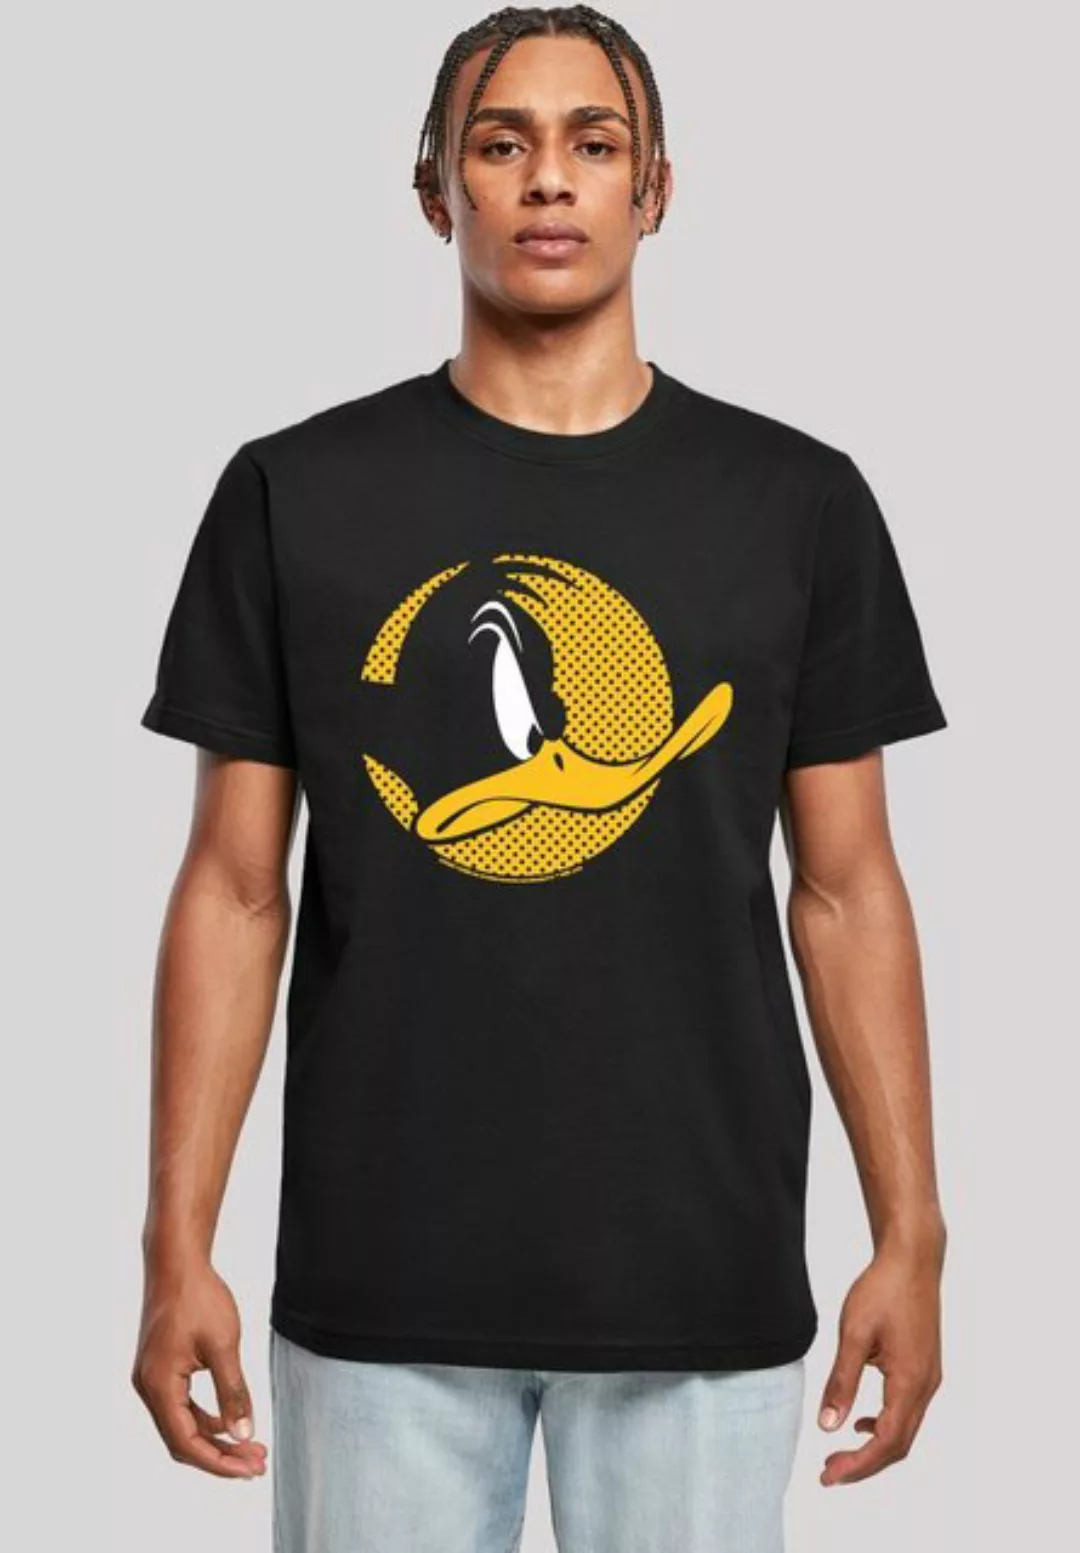 F4NT4STIC T-Shirt Looney Tunes Daffy Duck Dotted Cartoon Logo Herren,Premiu günstig online kaufen